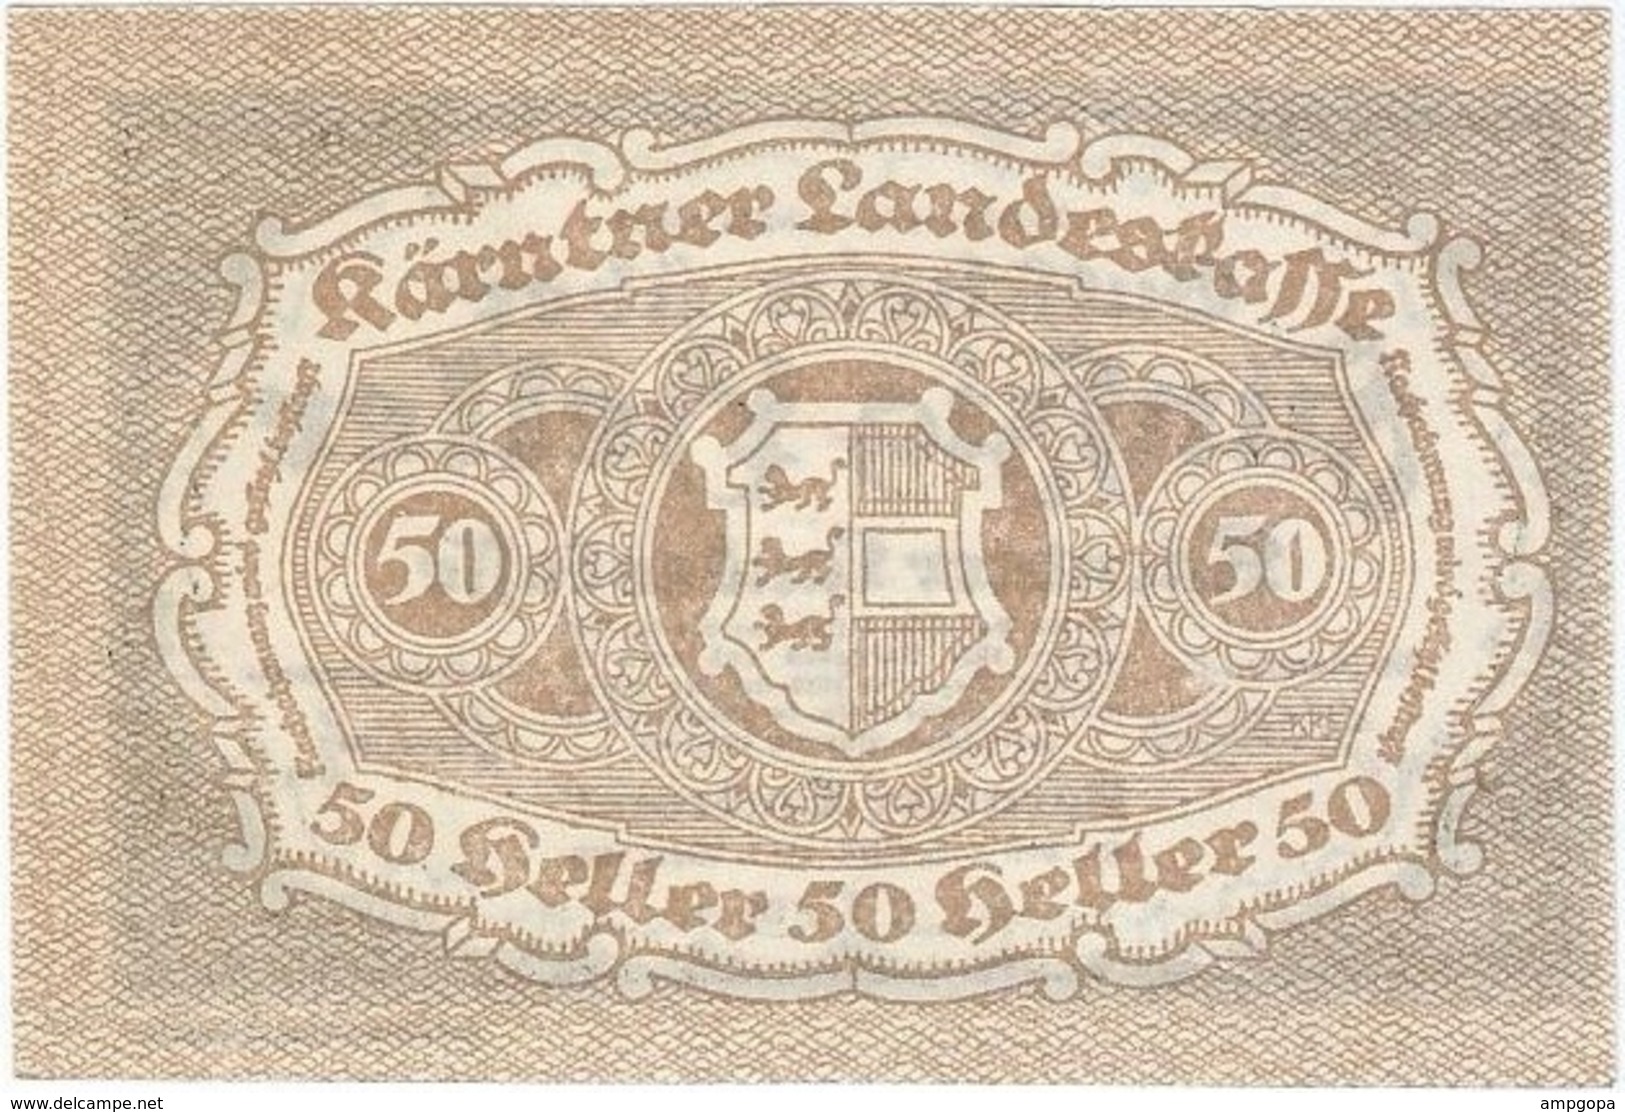 Austria (NOTGELD) 50 Heller Kärntner 1-3-1920 Kon 427 3 UNC Ref 3597-1 - Austria